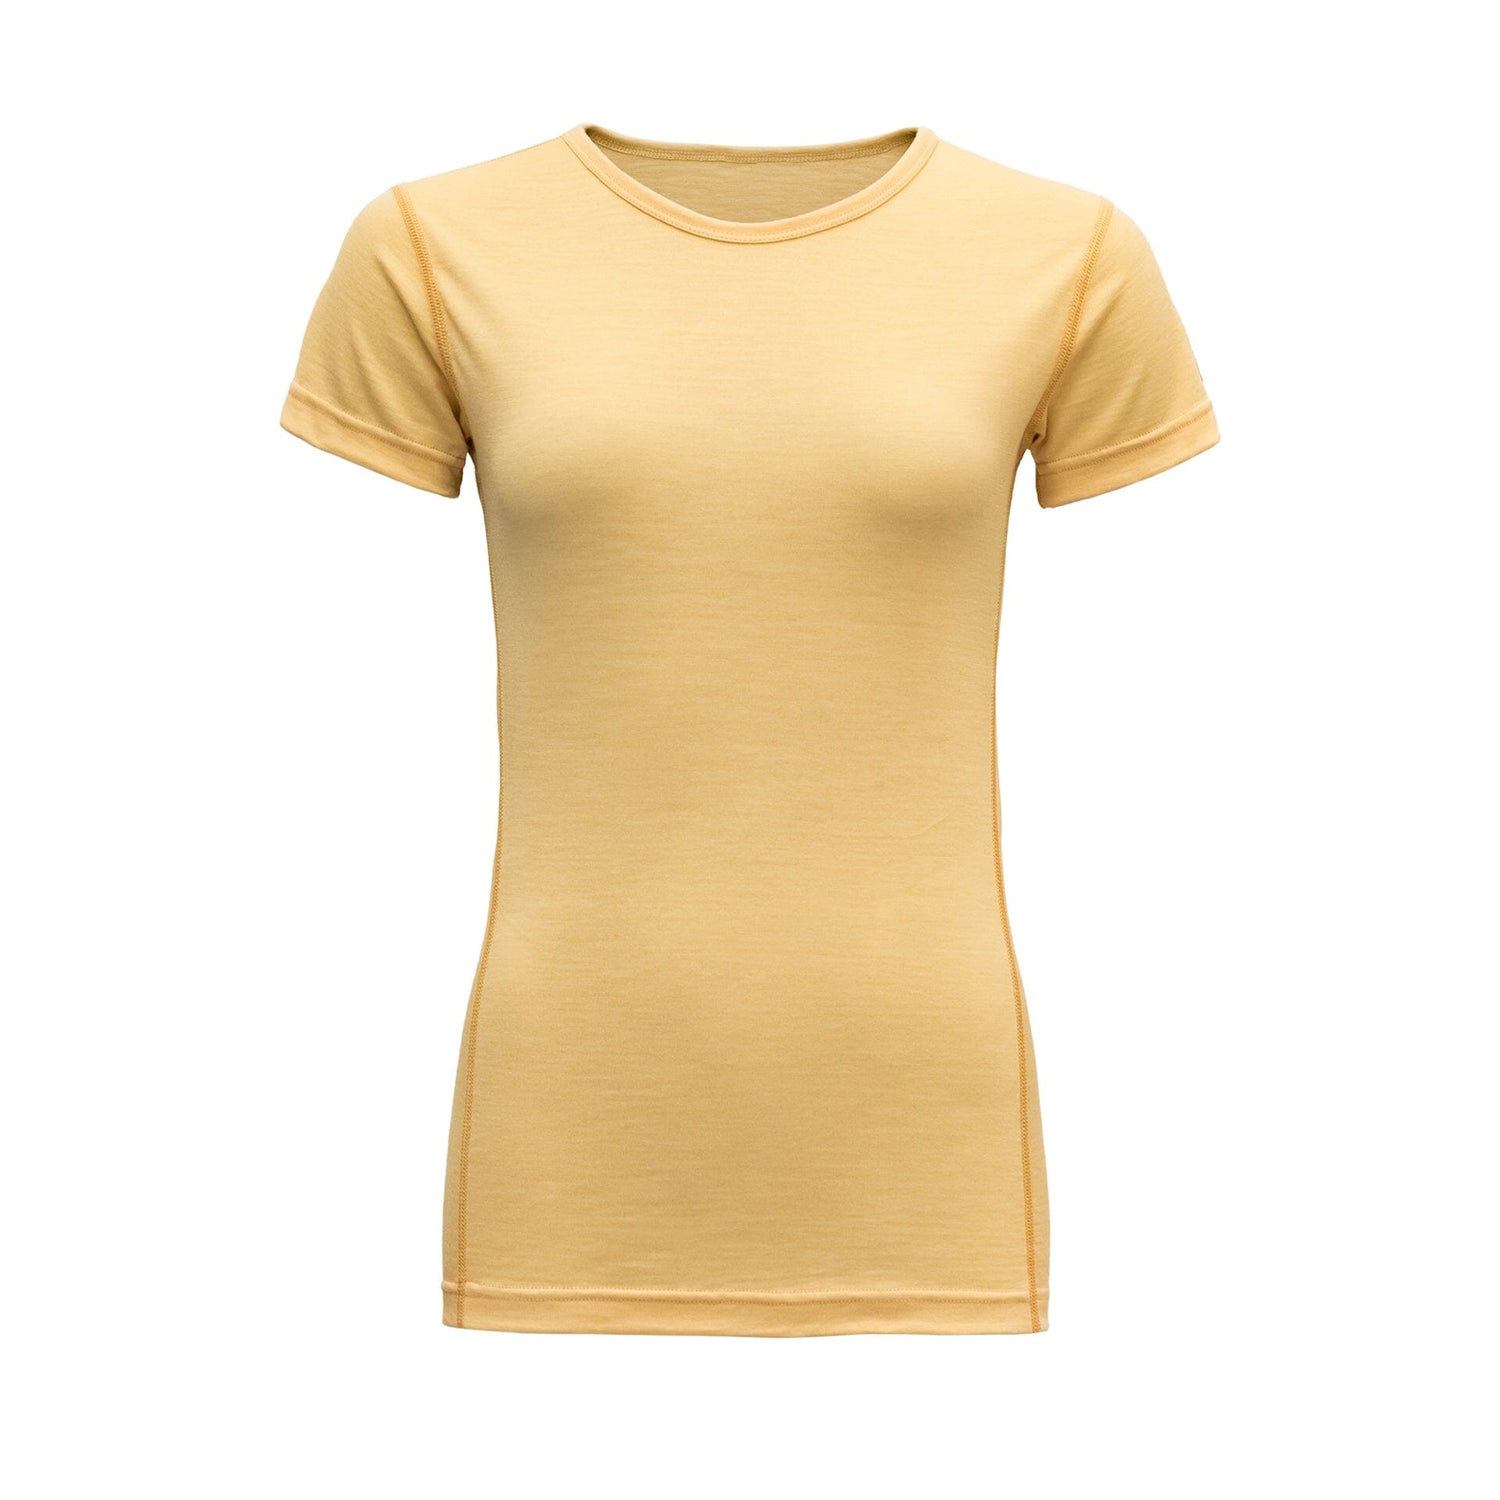 Devold - W's Breeze T-shirt - 100% Merino wool - Weekendbee - sustainable sportswear